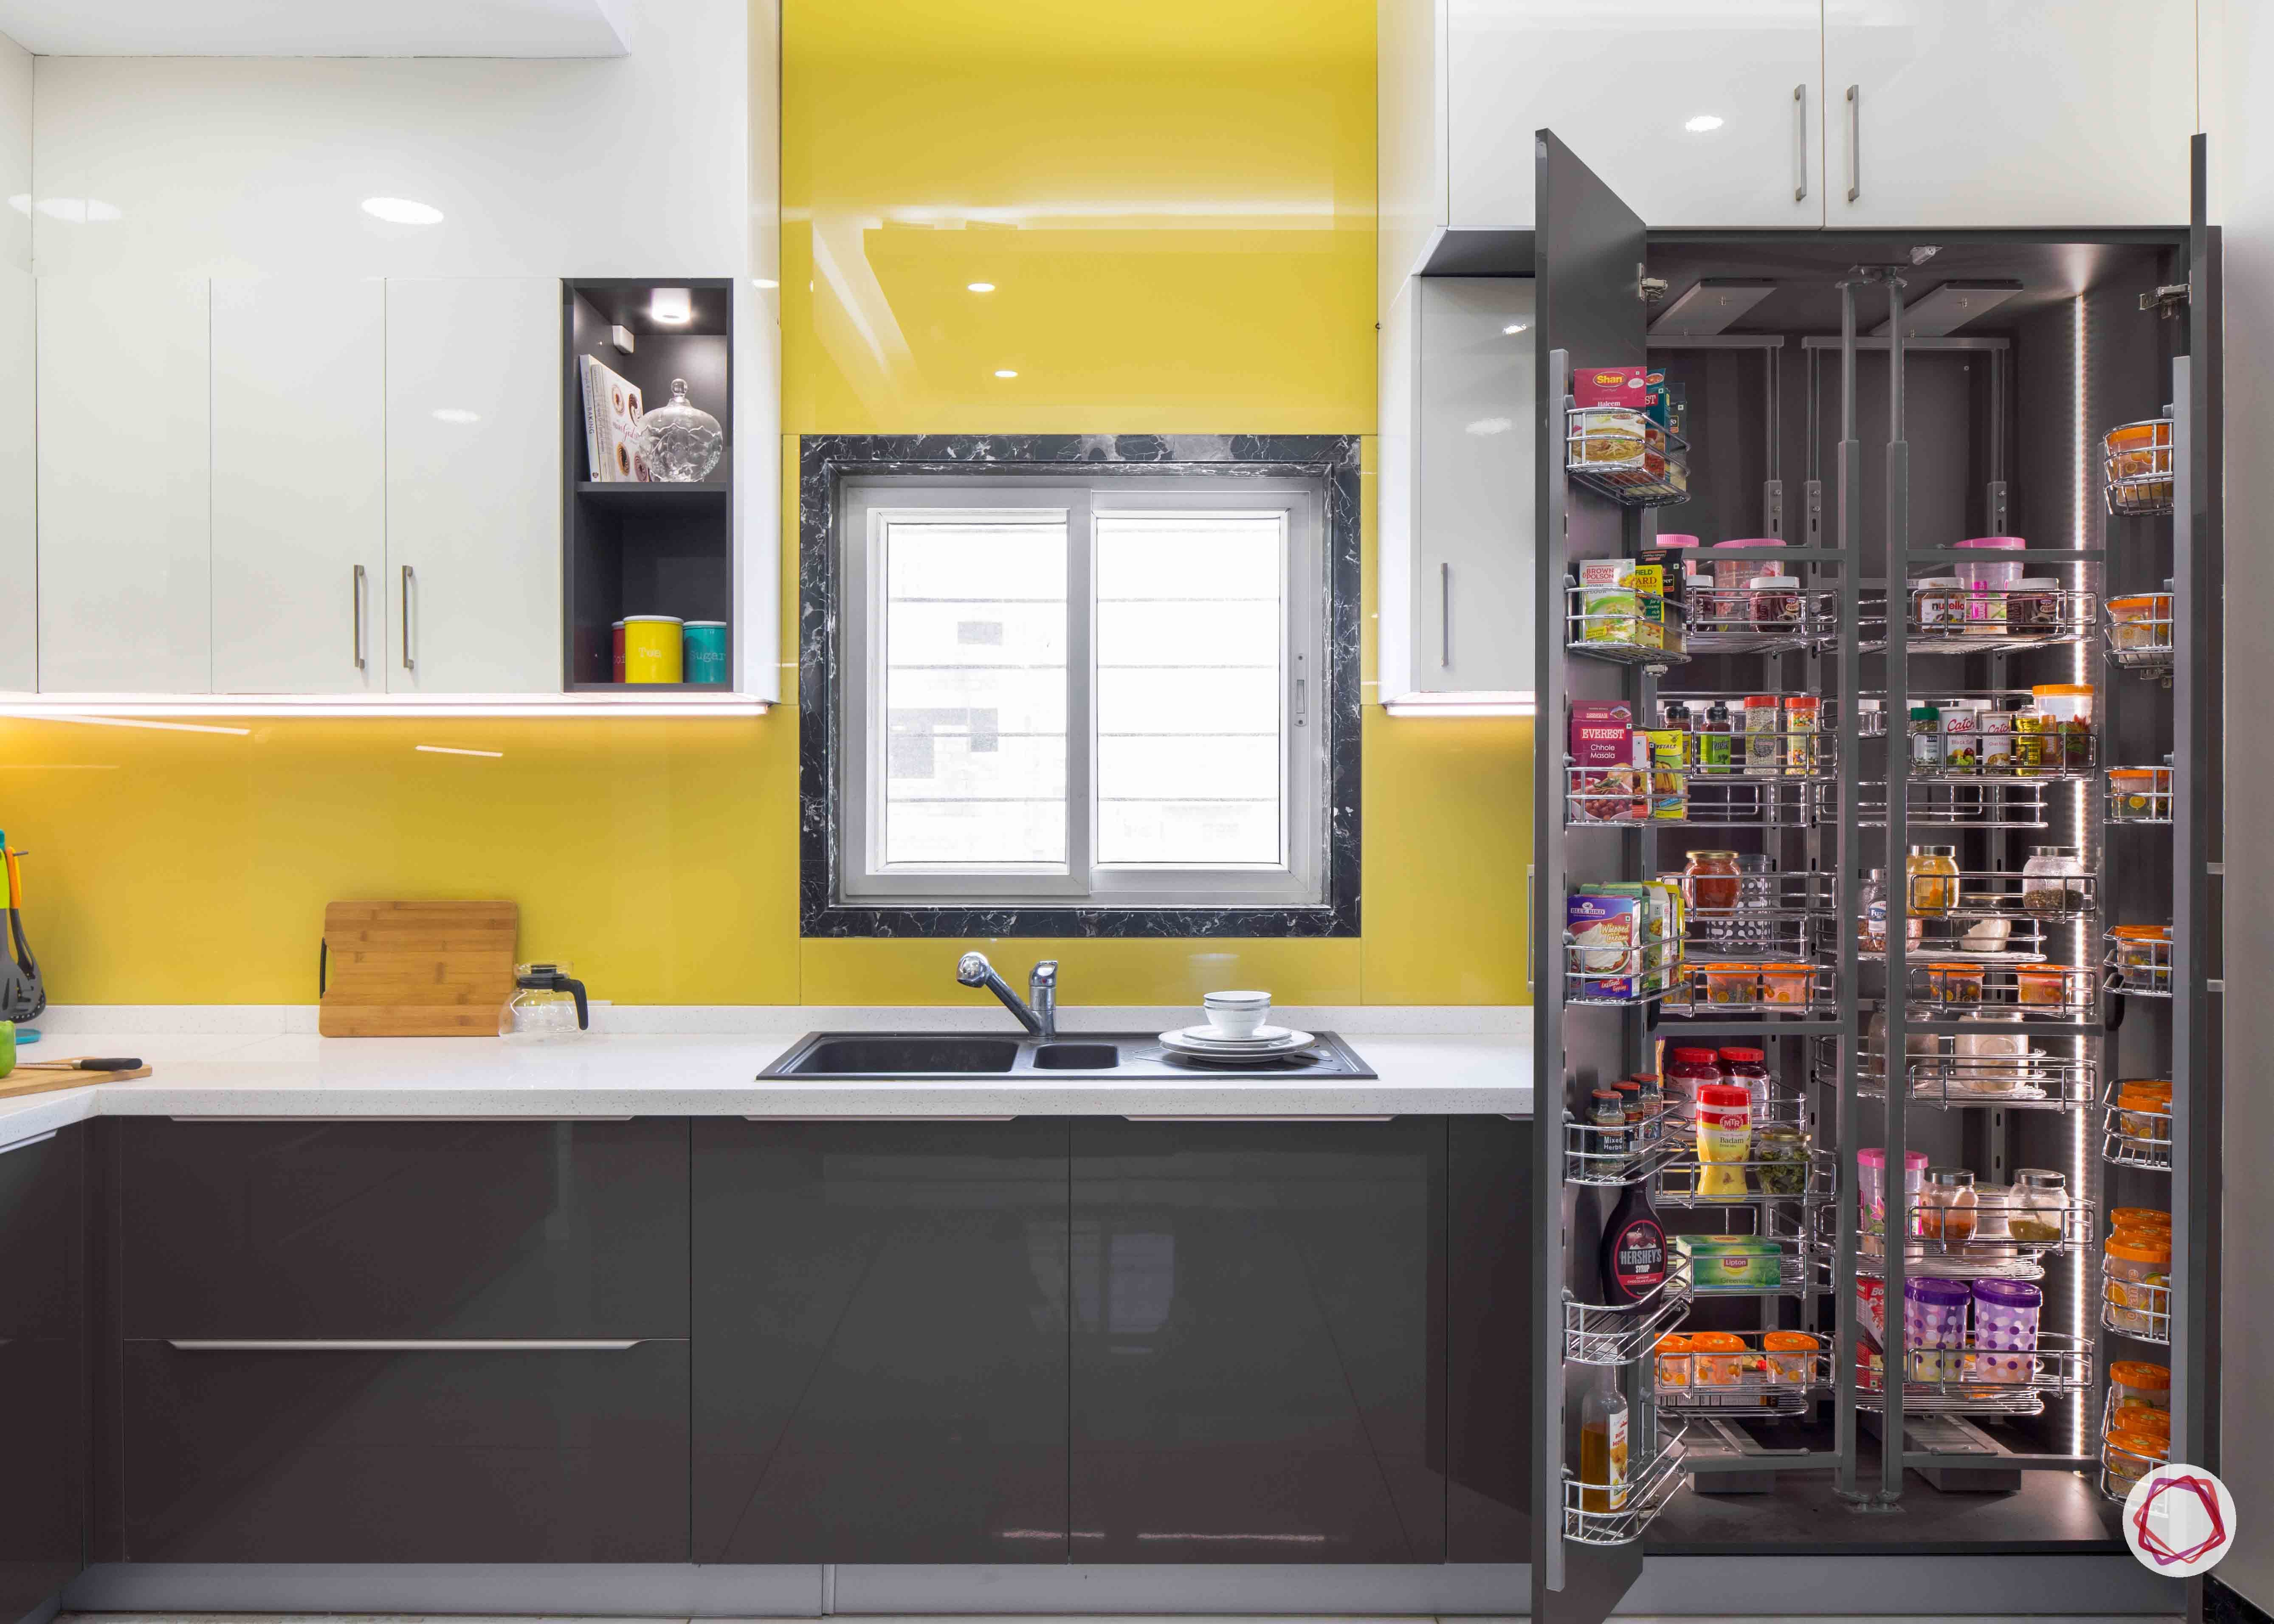 modular-kitchen-design-images-tall-storage-unit-yellow-kitchen-sink